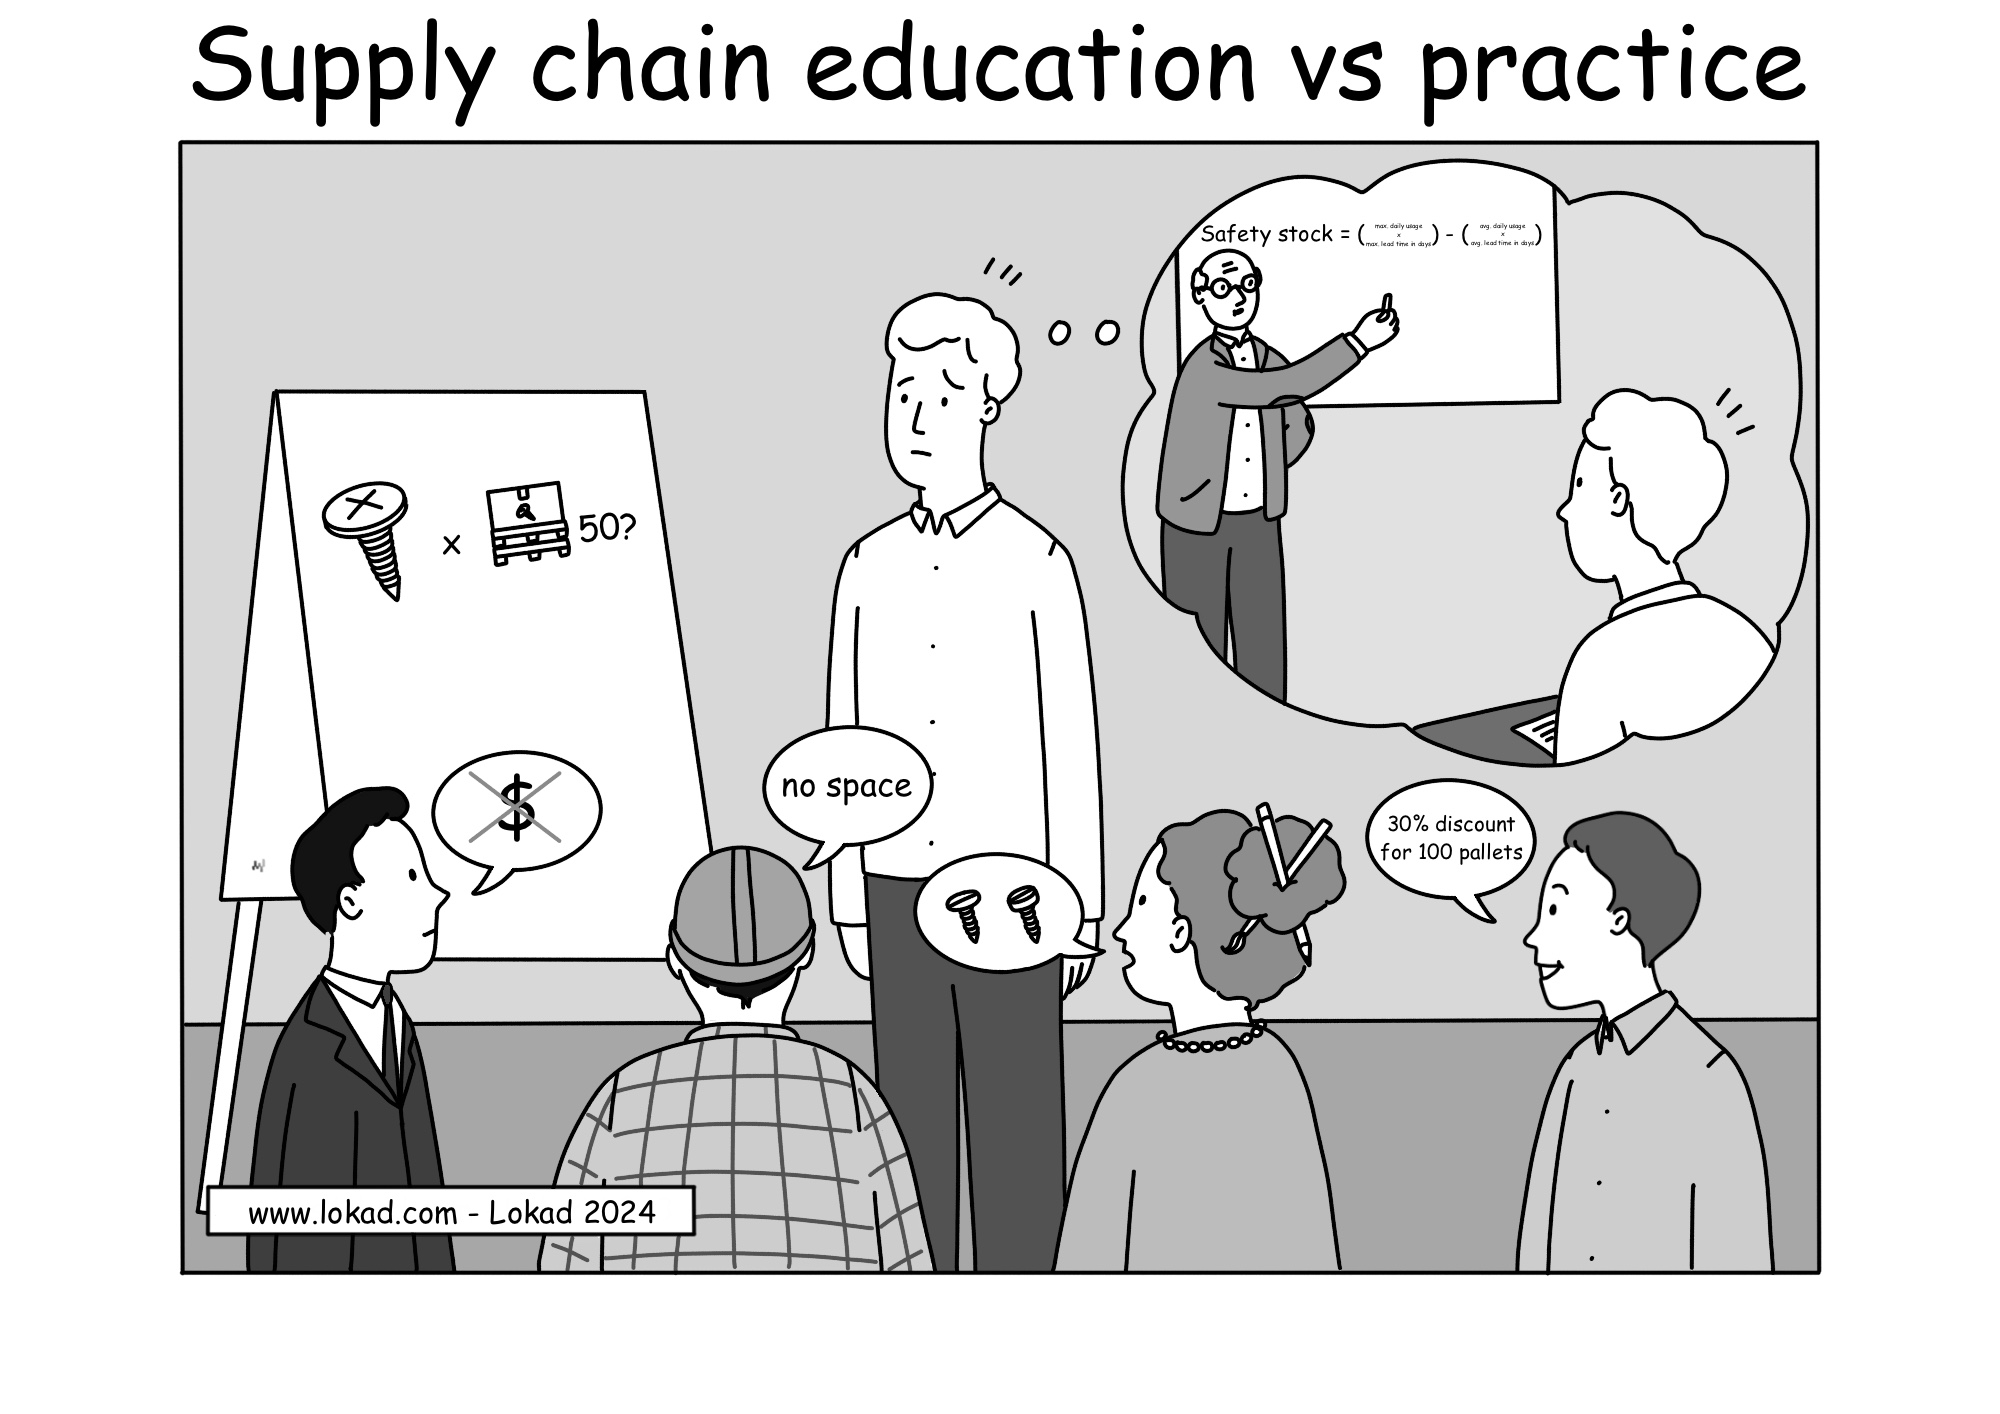 L'éducation en supply chain par rapport à la pratique.